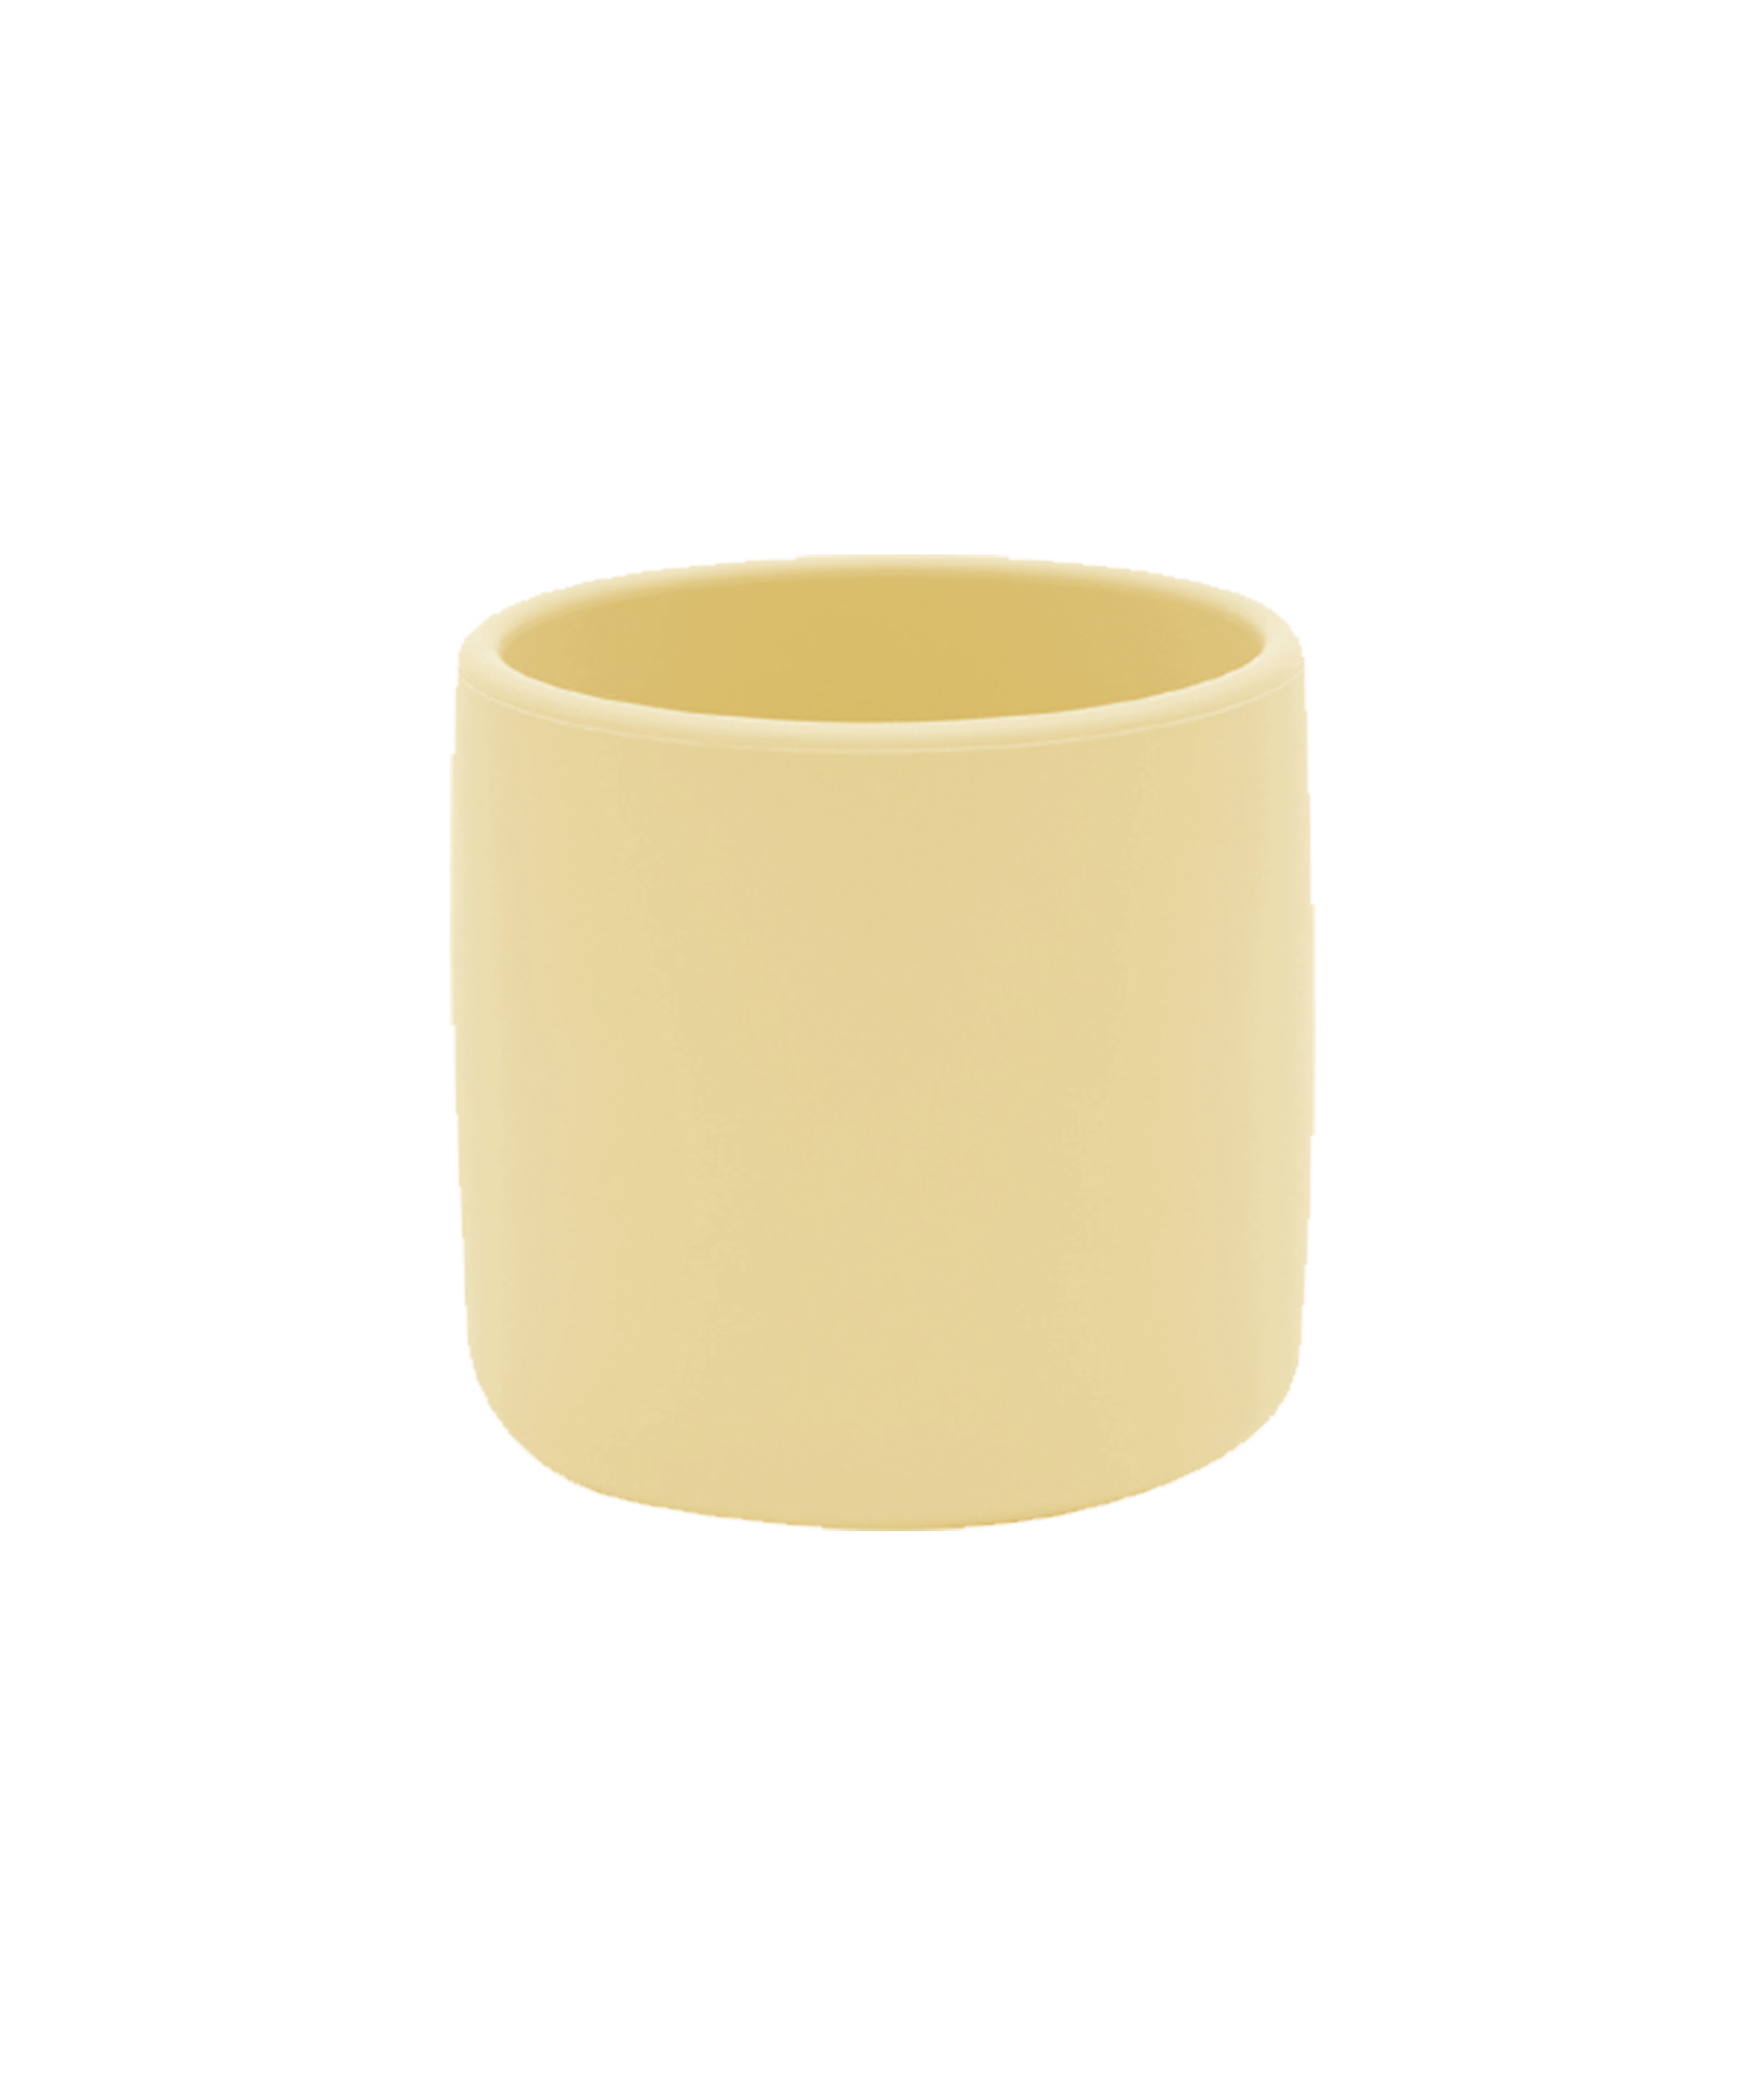 MinikOiOi Mini Cup - Mellow Yellow